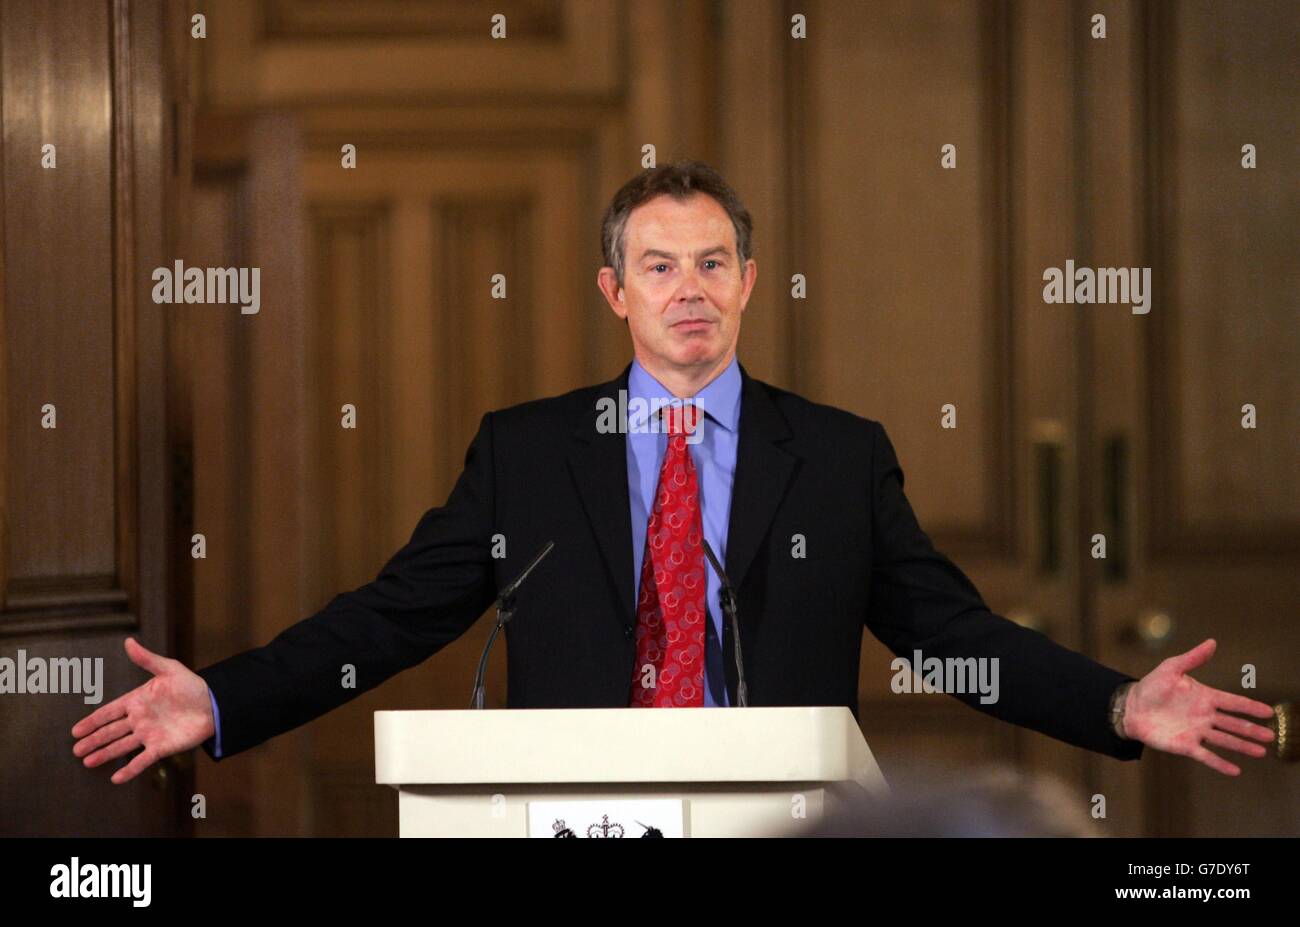 Il primo ministro Tony Blair Gestures, durante la sua conferenza stampa mensile a Downing Street, dove ha difeso la mossa del governo di sottoscrivere i piani dell'UE per semplificare il processo decisionale in materia di asilo e immigrazione, insistendo sul fatto che non limiterebbero il controllo della Gran Bretagna sui propri confini. Foto Stock